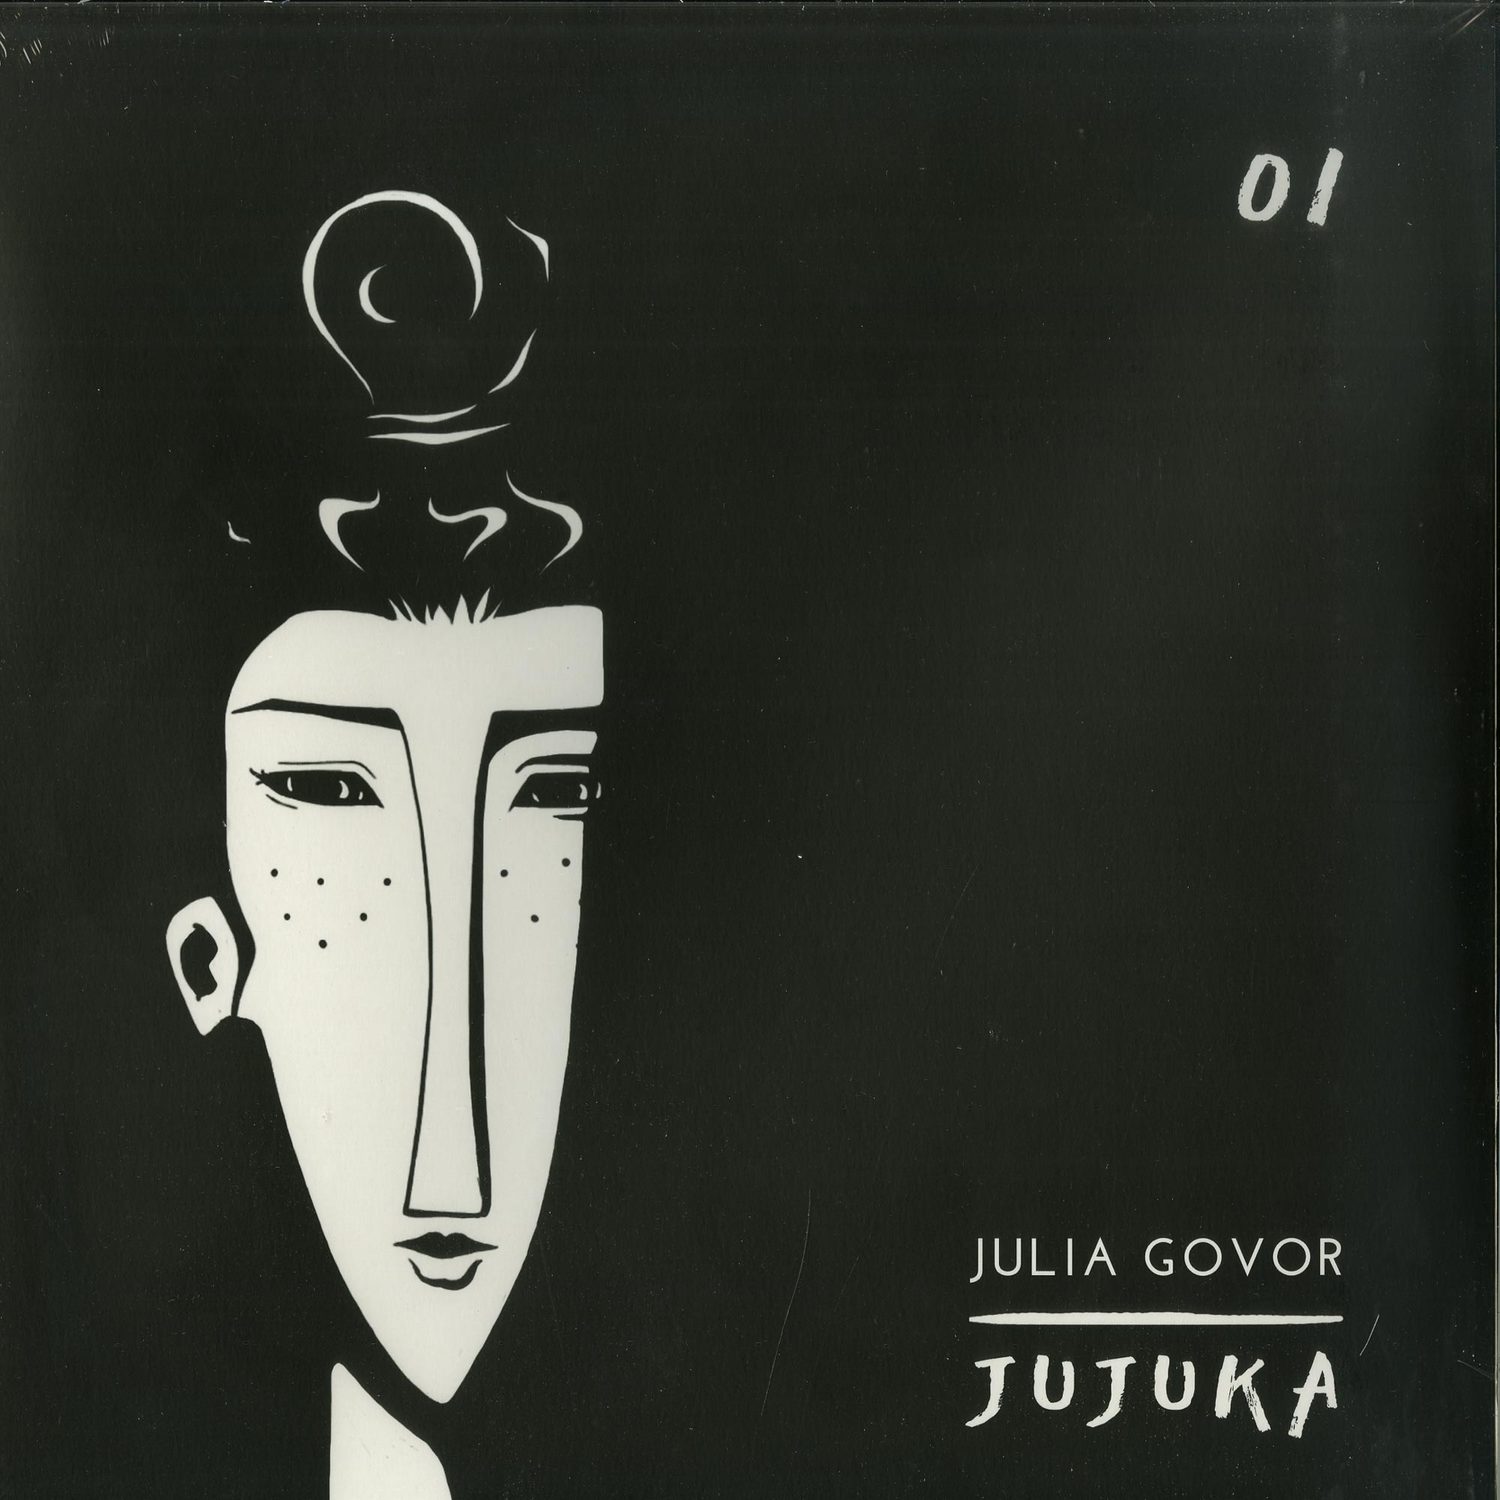 Julia Govor - 001 